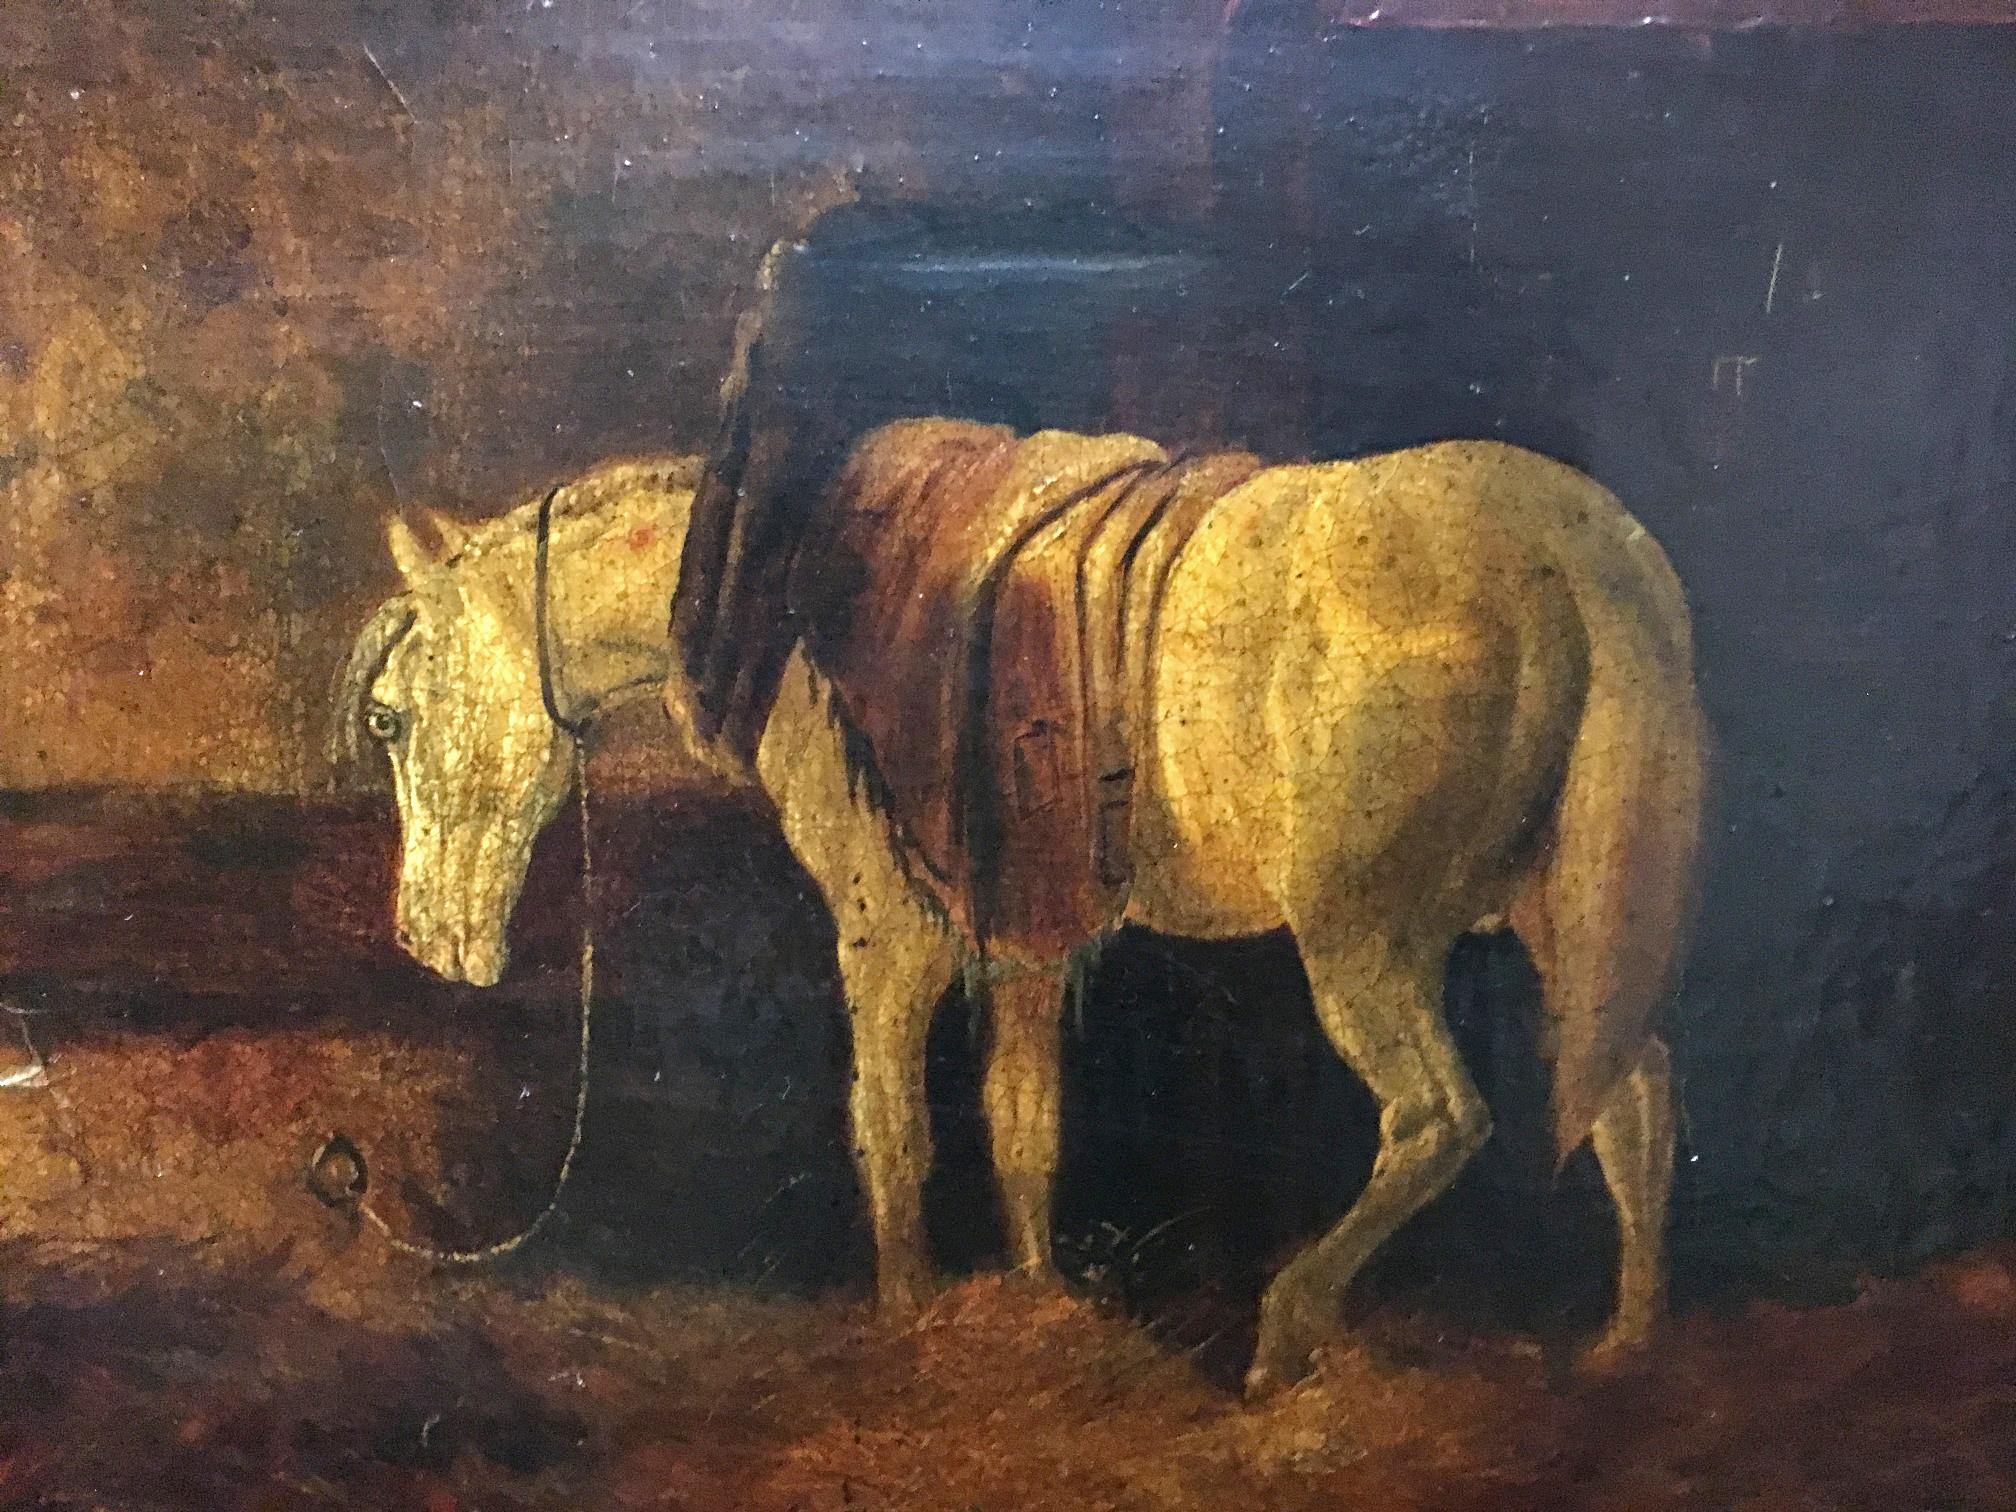 Belle huile sur toile continentale d'un cheval dans une écurie avec signature inéligible Dans un cadre en bois doré sculpté.
Fin du XIXe siècle, début du XXe.
Dimensions :
Toile H. 12